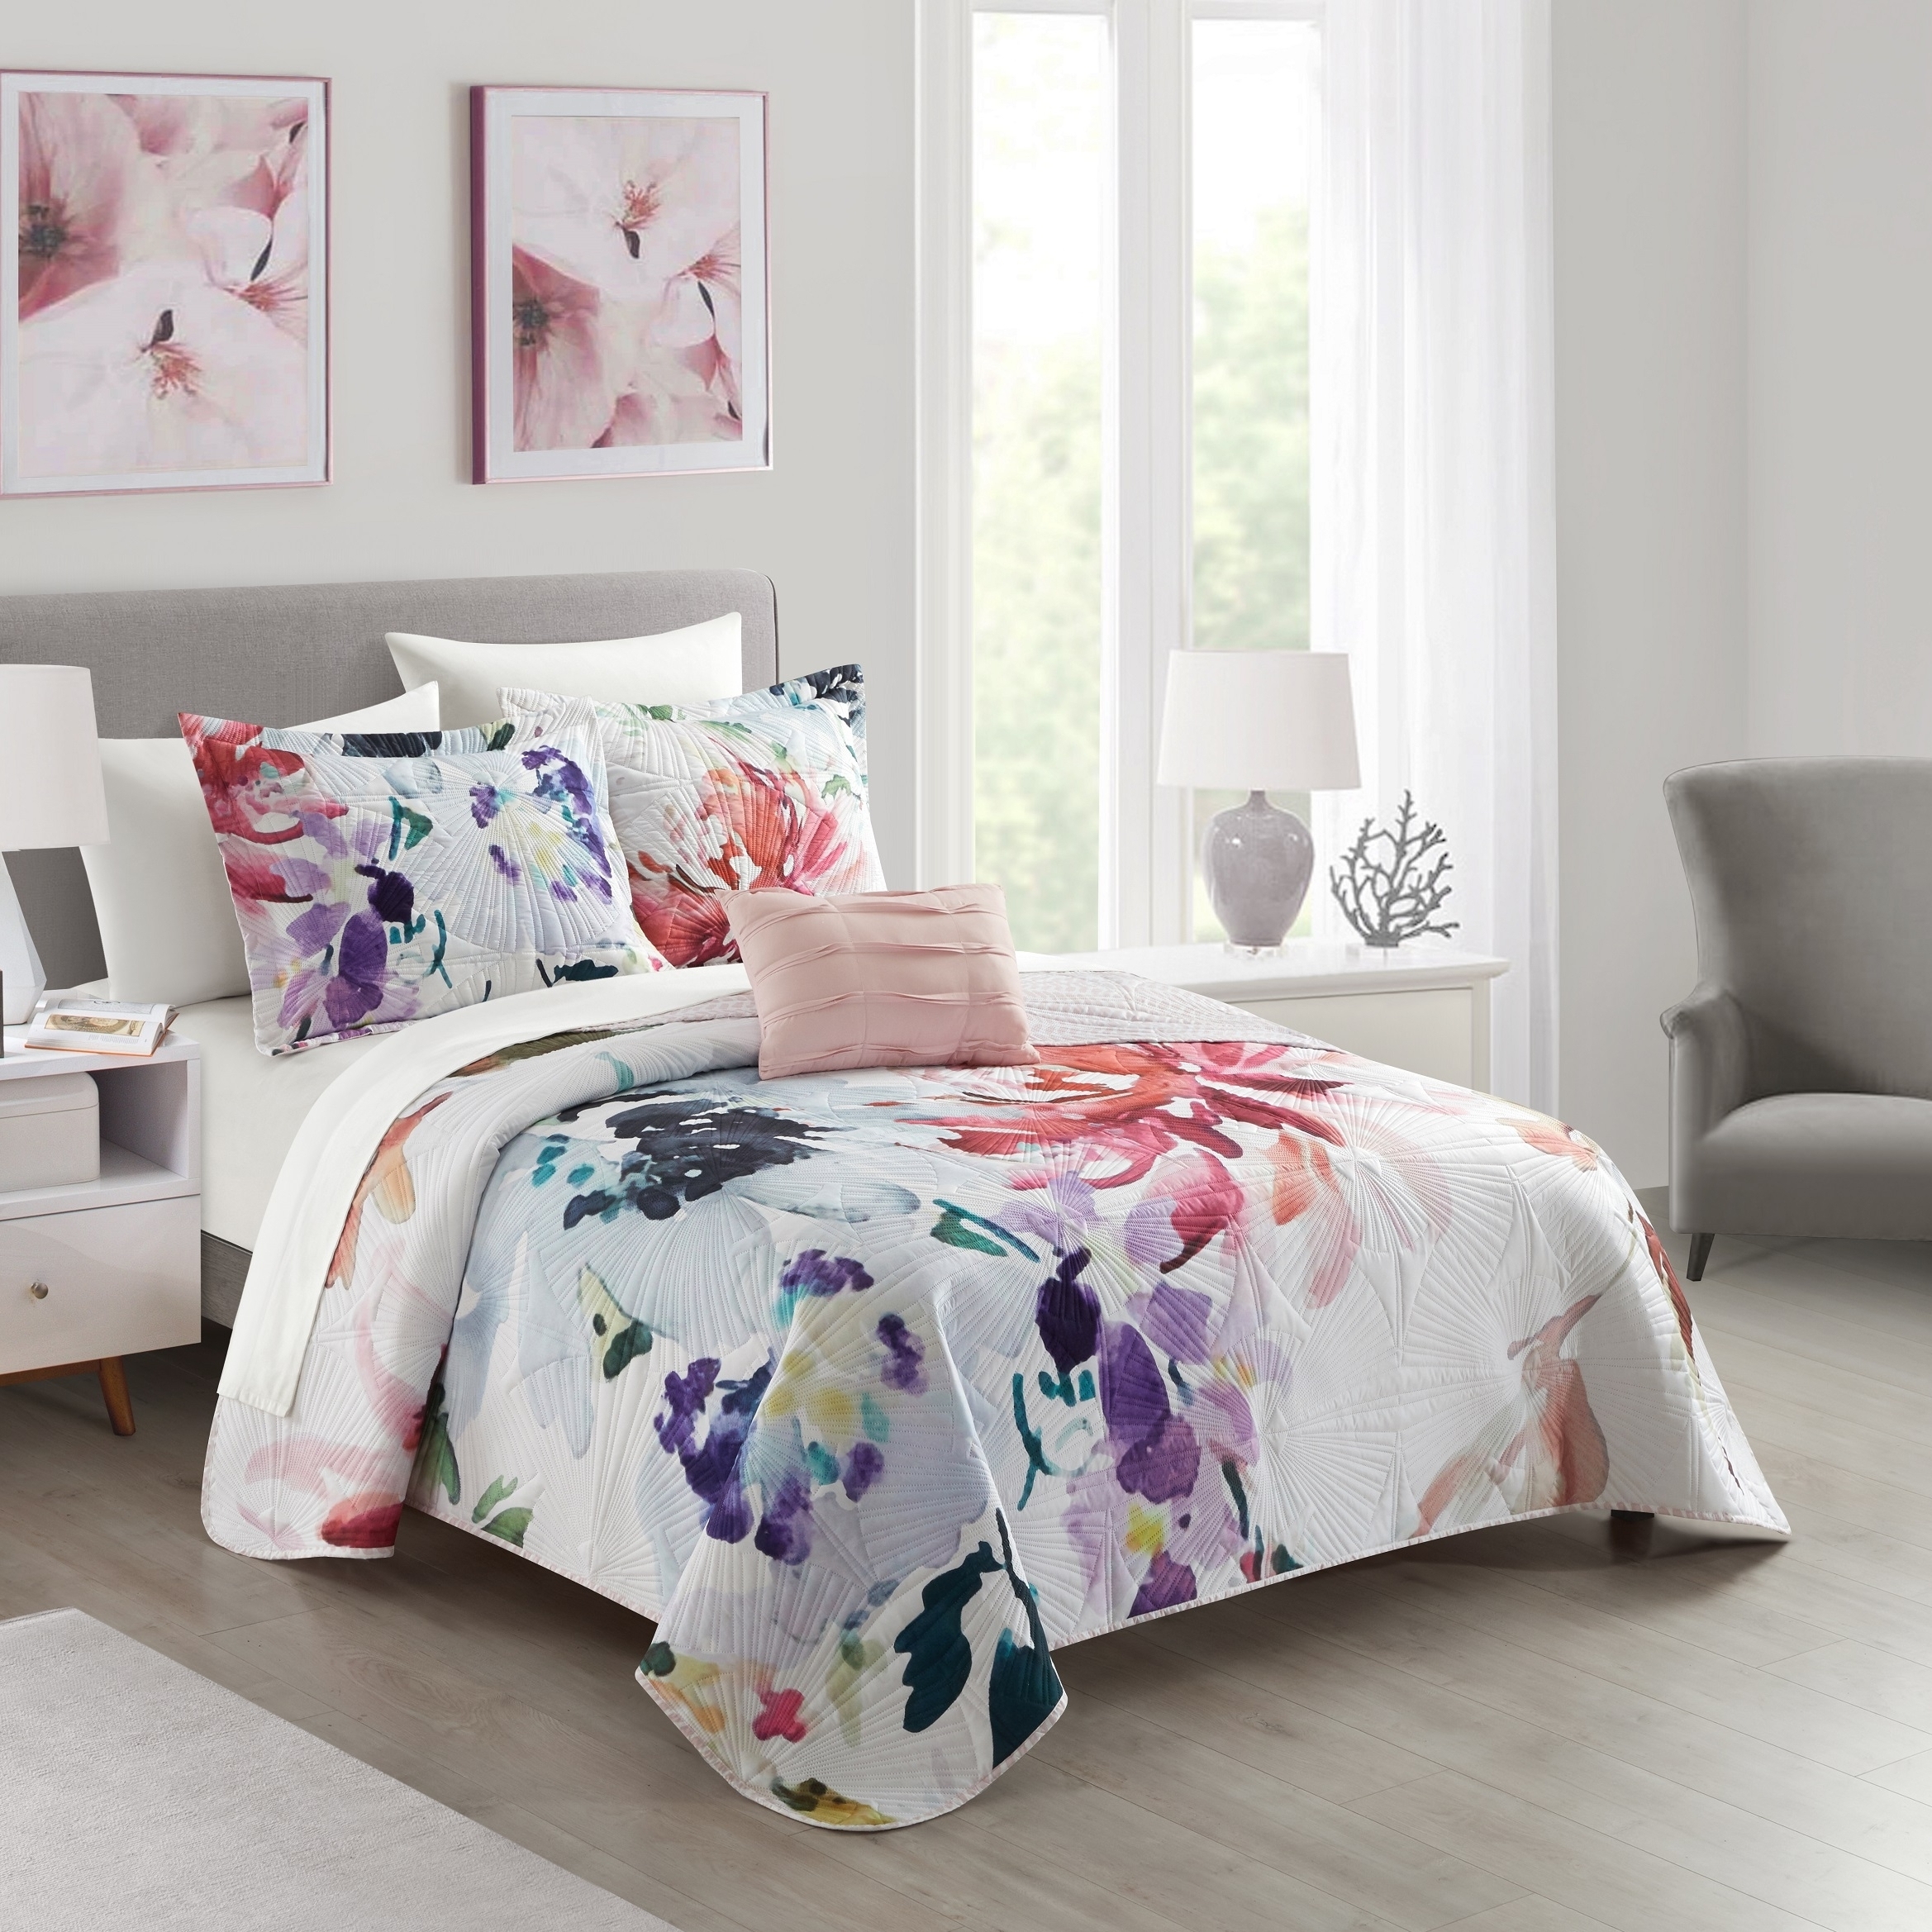 Ateus Palace 3 Or 4Piece Reversible Quilt Set Floral Watercolor Design Bedding - Mateus Purple, Queen (4 Piece)